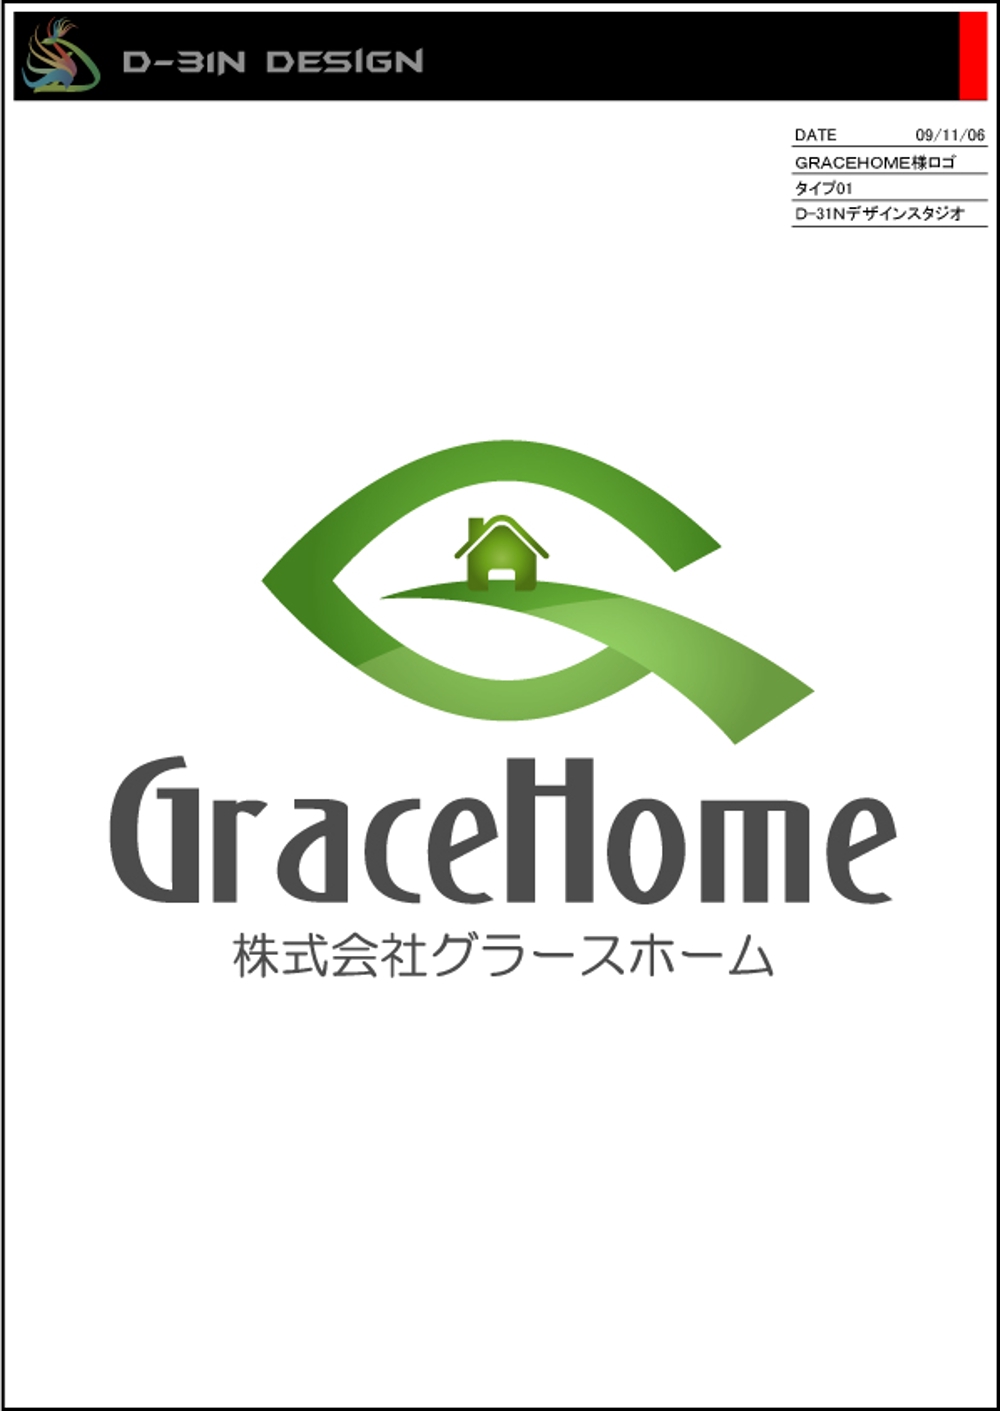 gracehome-logo01.jpg